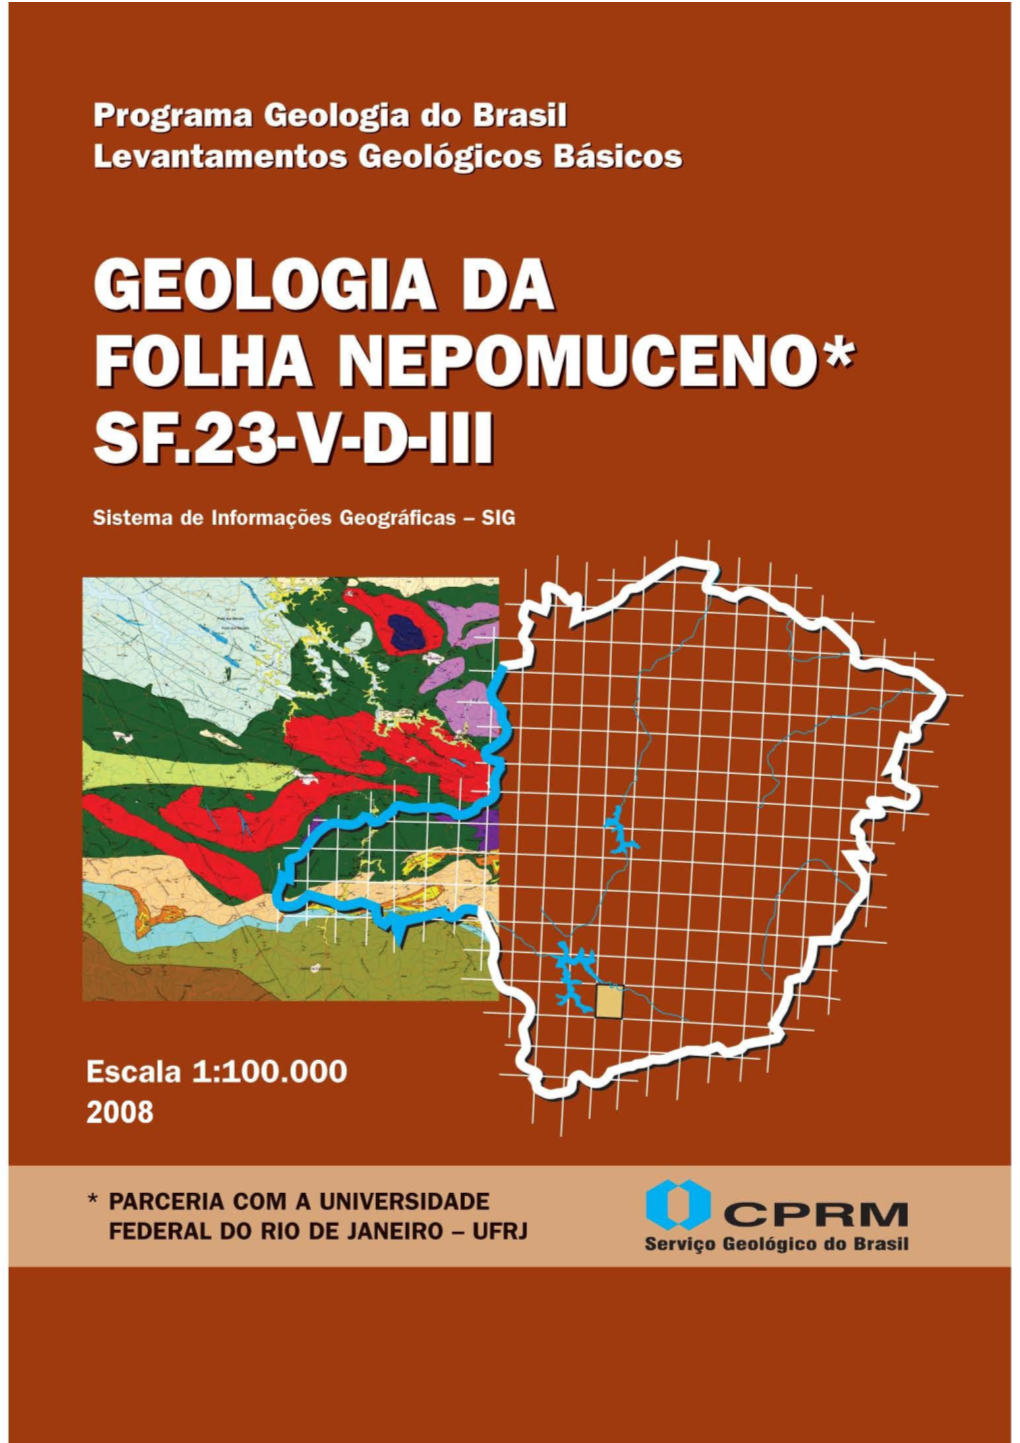 PROGRAMA GEOLOGIA DO BRASIL Contrato CPRM- UFRJ Nº